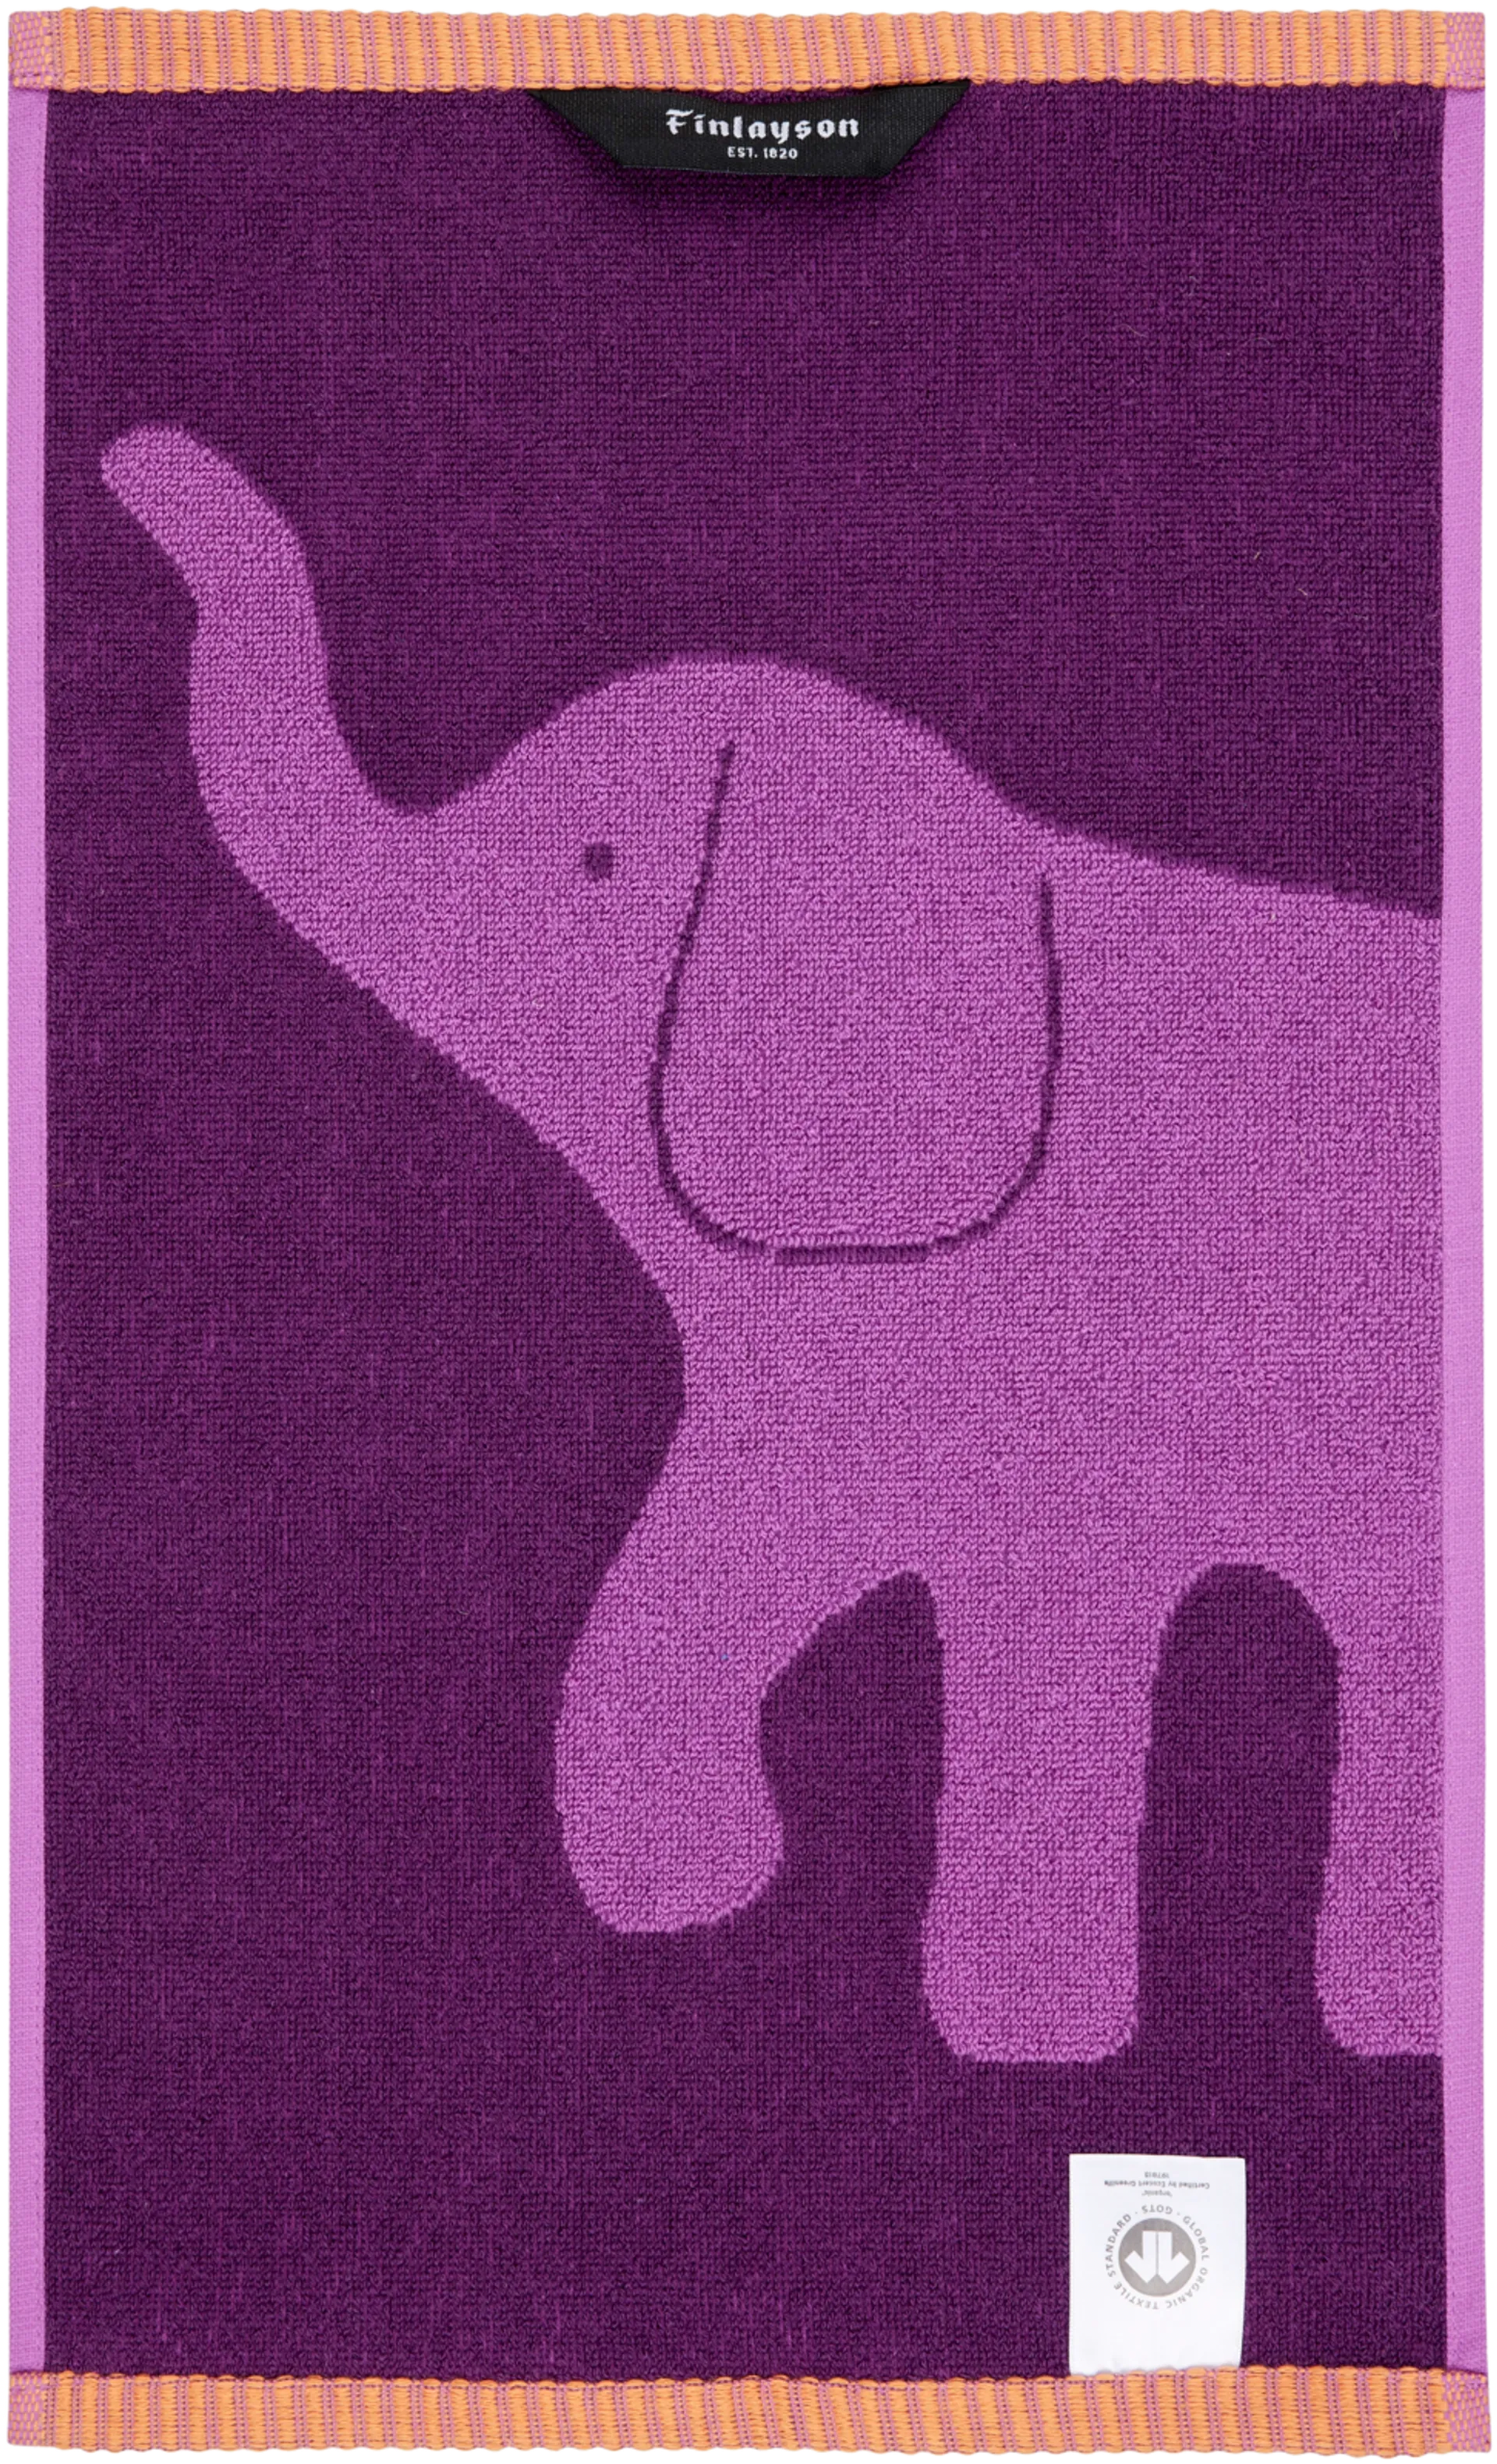 Finlayson Käsipyyhe Elefantti Vapaa 30x50cm violetti/oranssi - 3